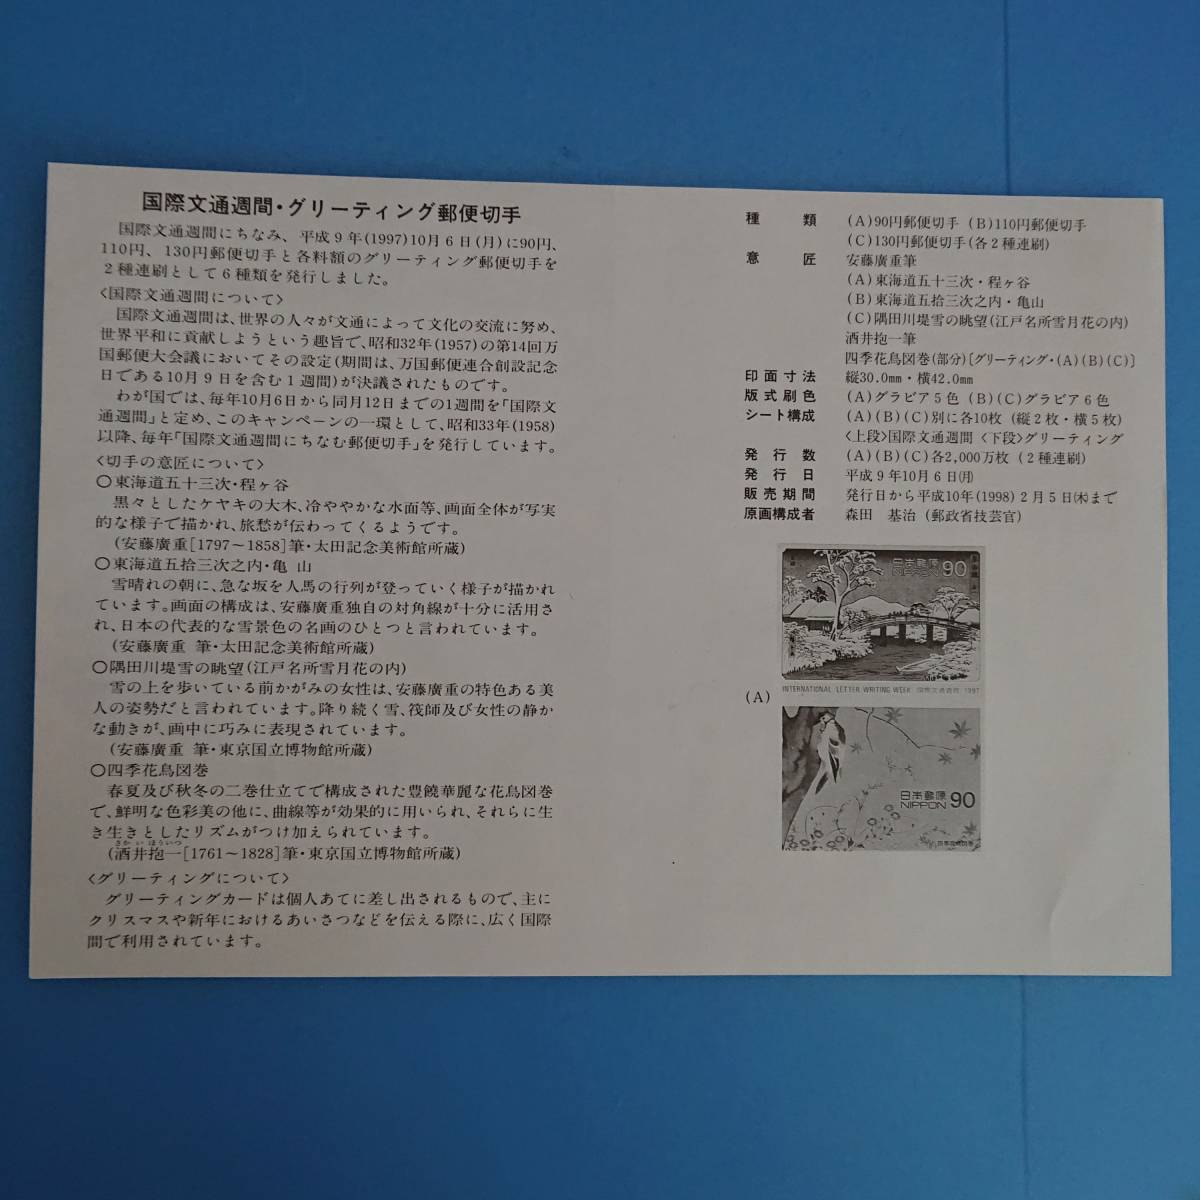 国際文通週間 グリーティング郵便切手 発行日 平成9年10月6日_画像4